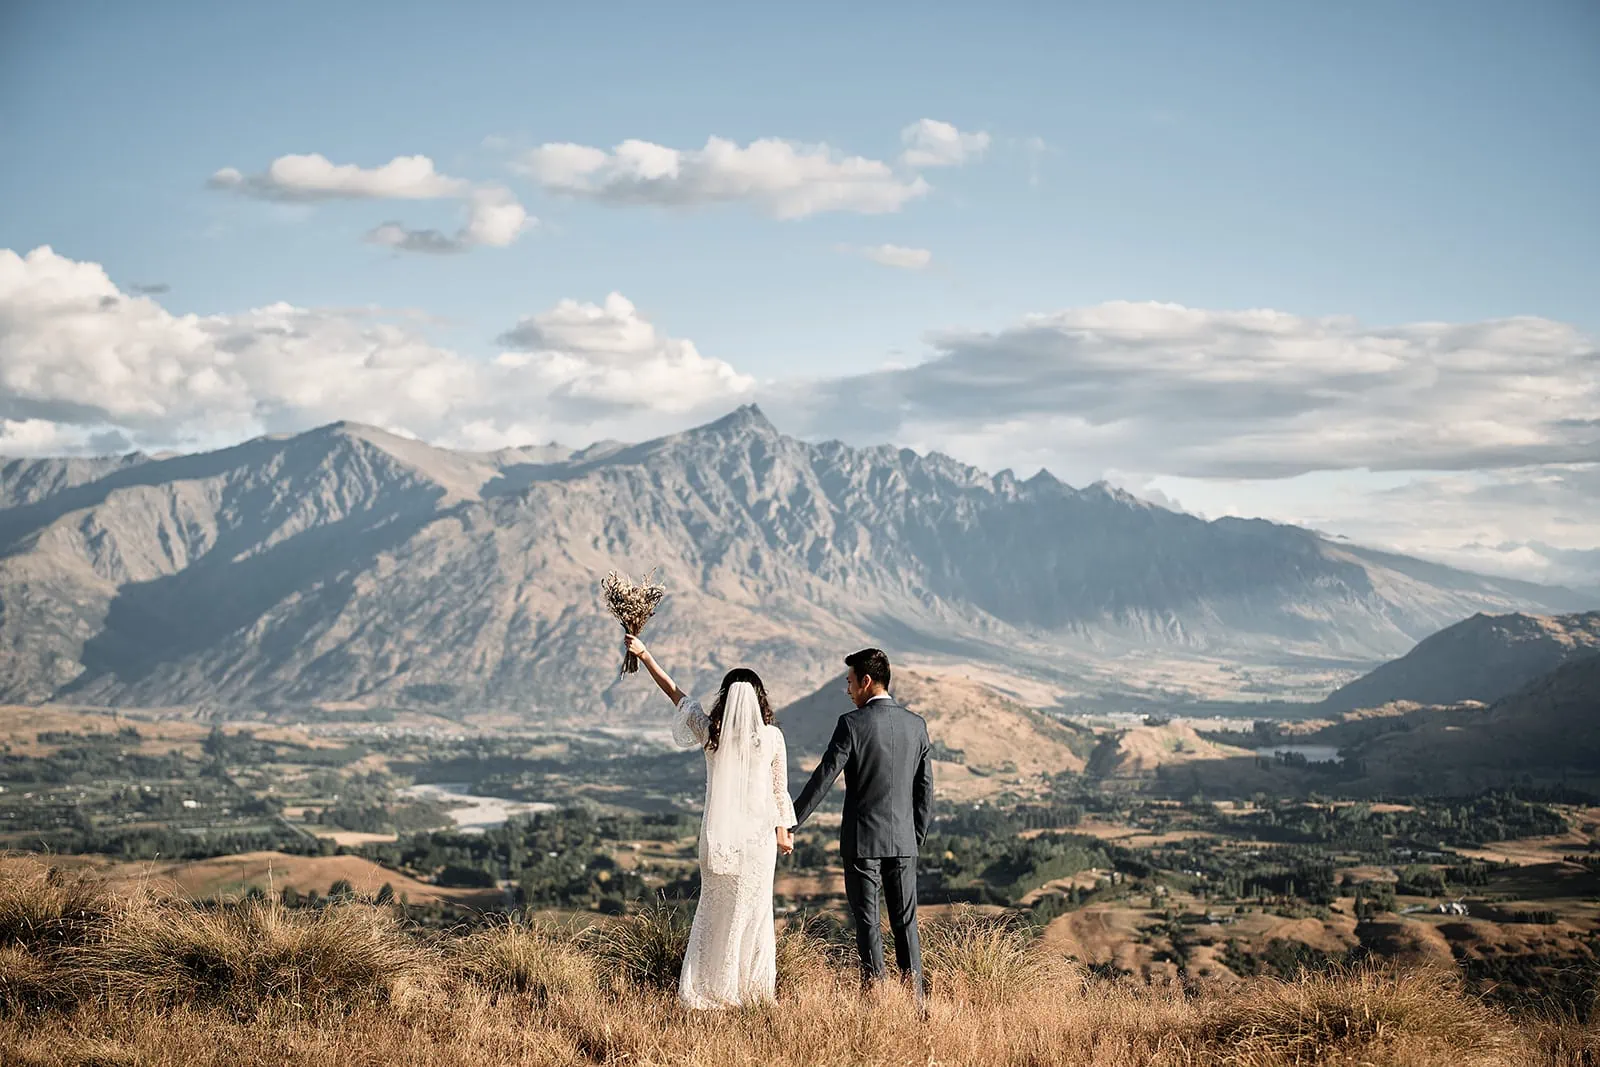 Coronet Peak Queenstown New Zealand Elopement Wedding Photographer - A bride and groom standing on top of Coronet Peak, Queenstown, with mountains in the background.